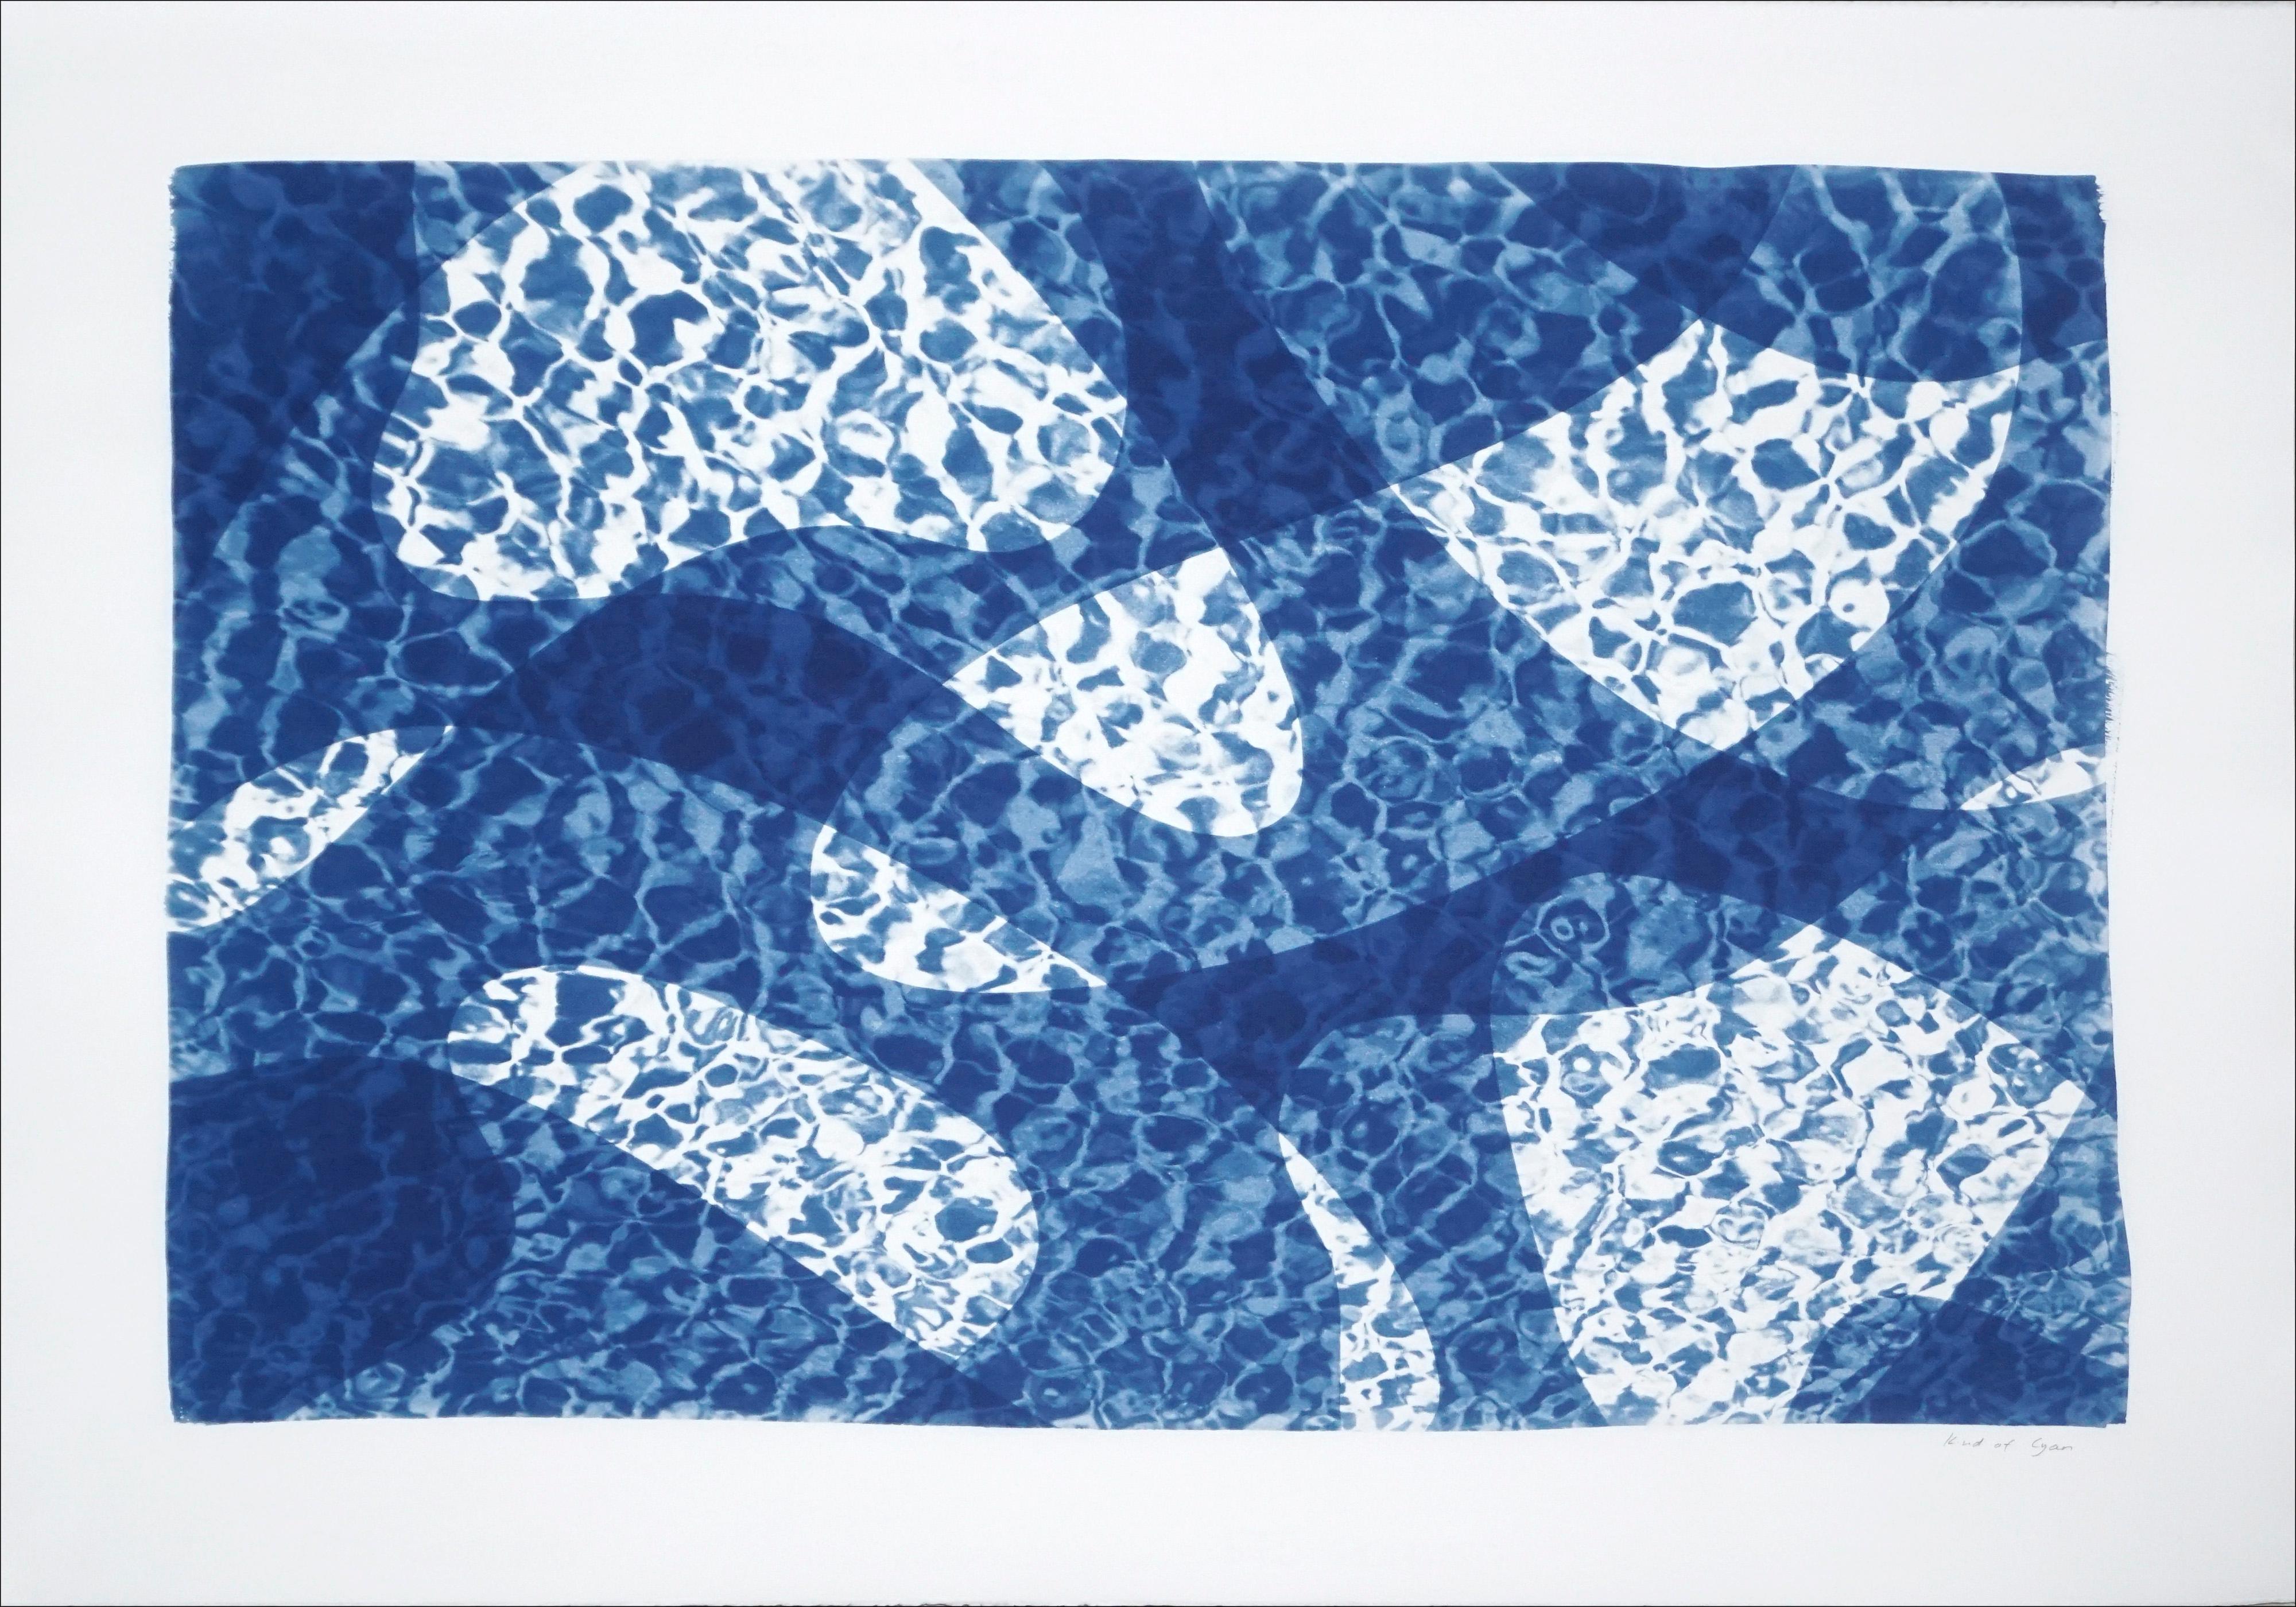 Wasserreflexion eines Fisches unter Wasser, Pool-Monogramm-Zyanotyp in Blautönen